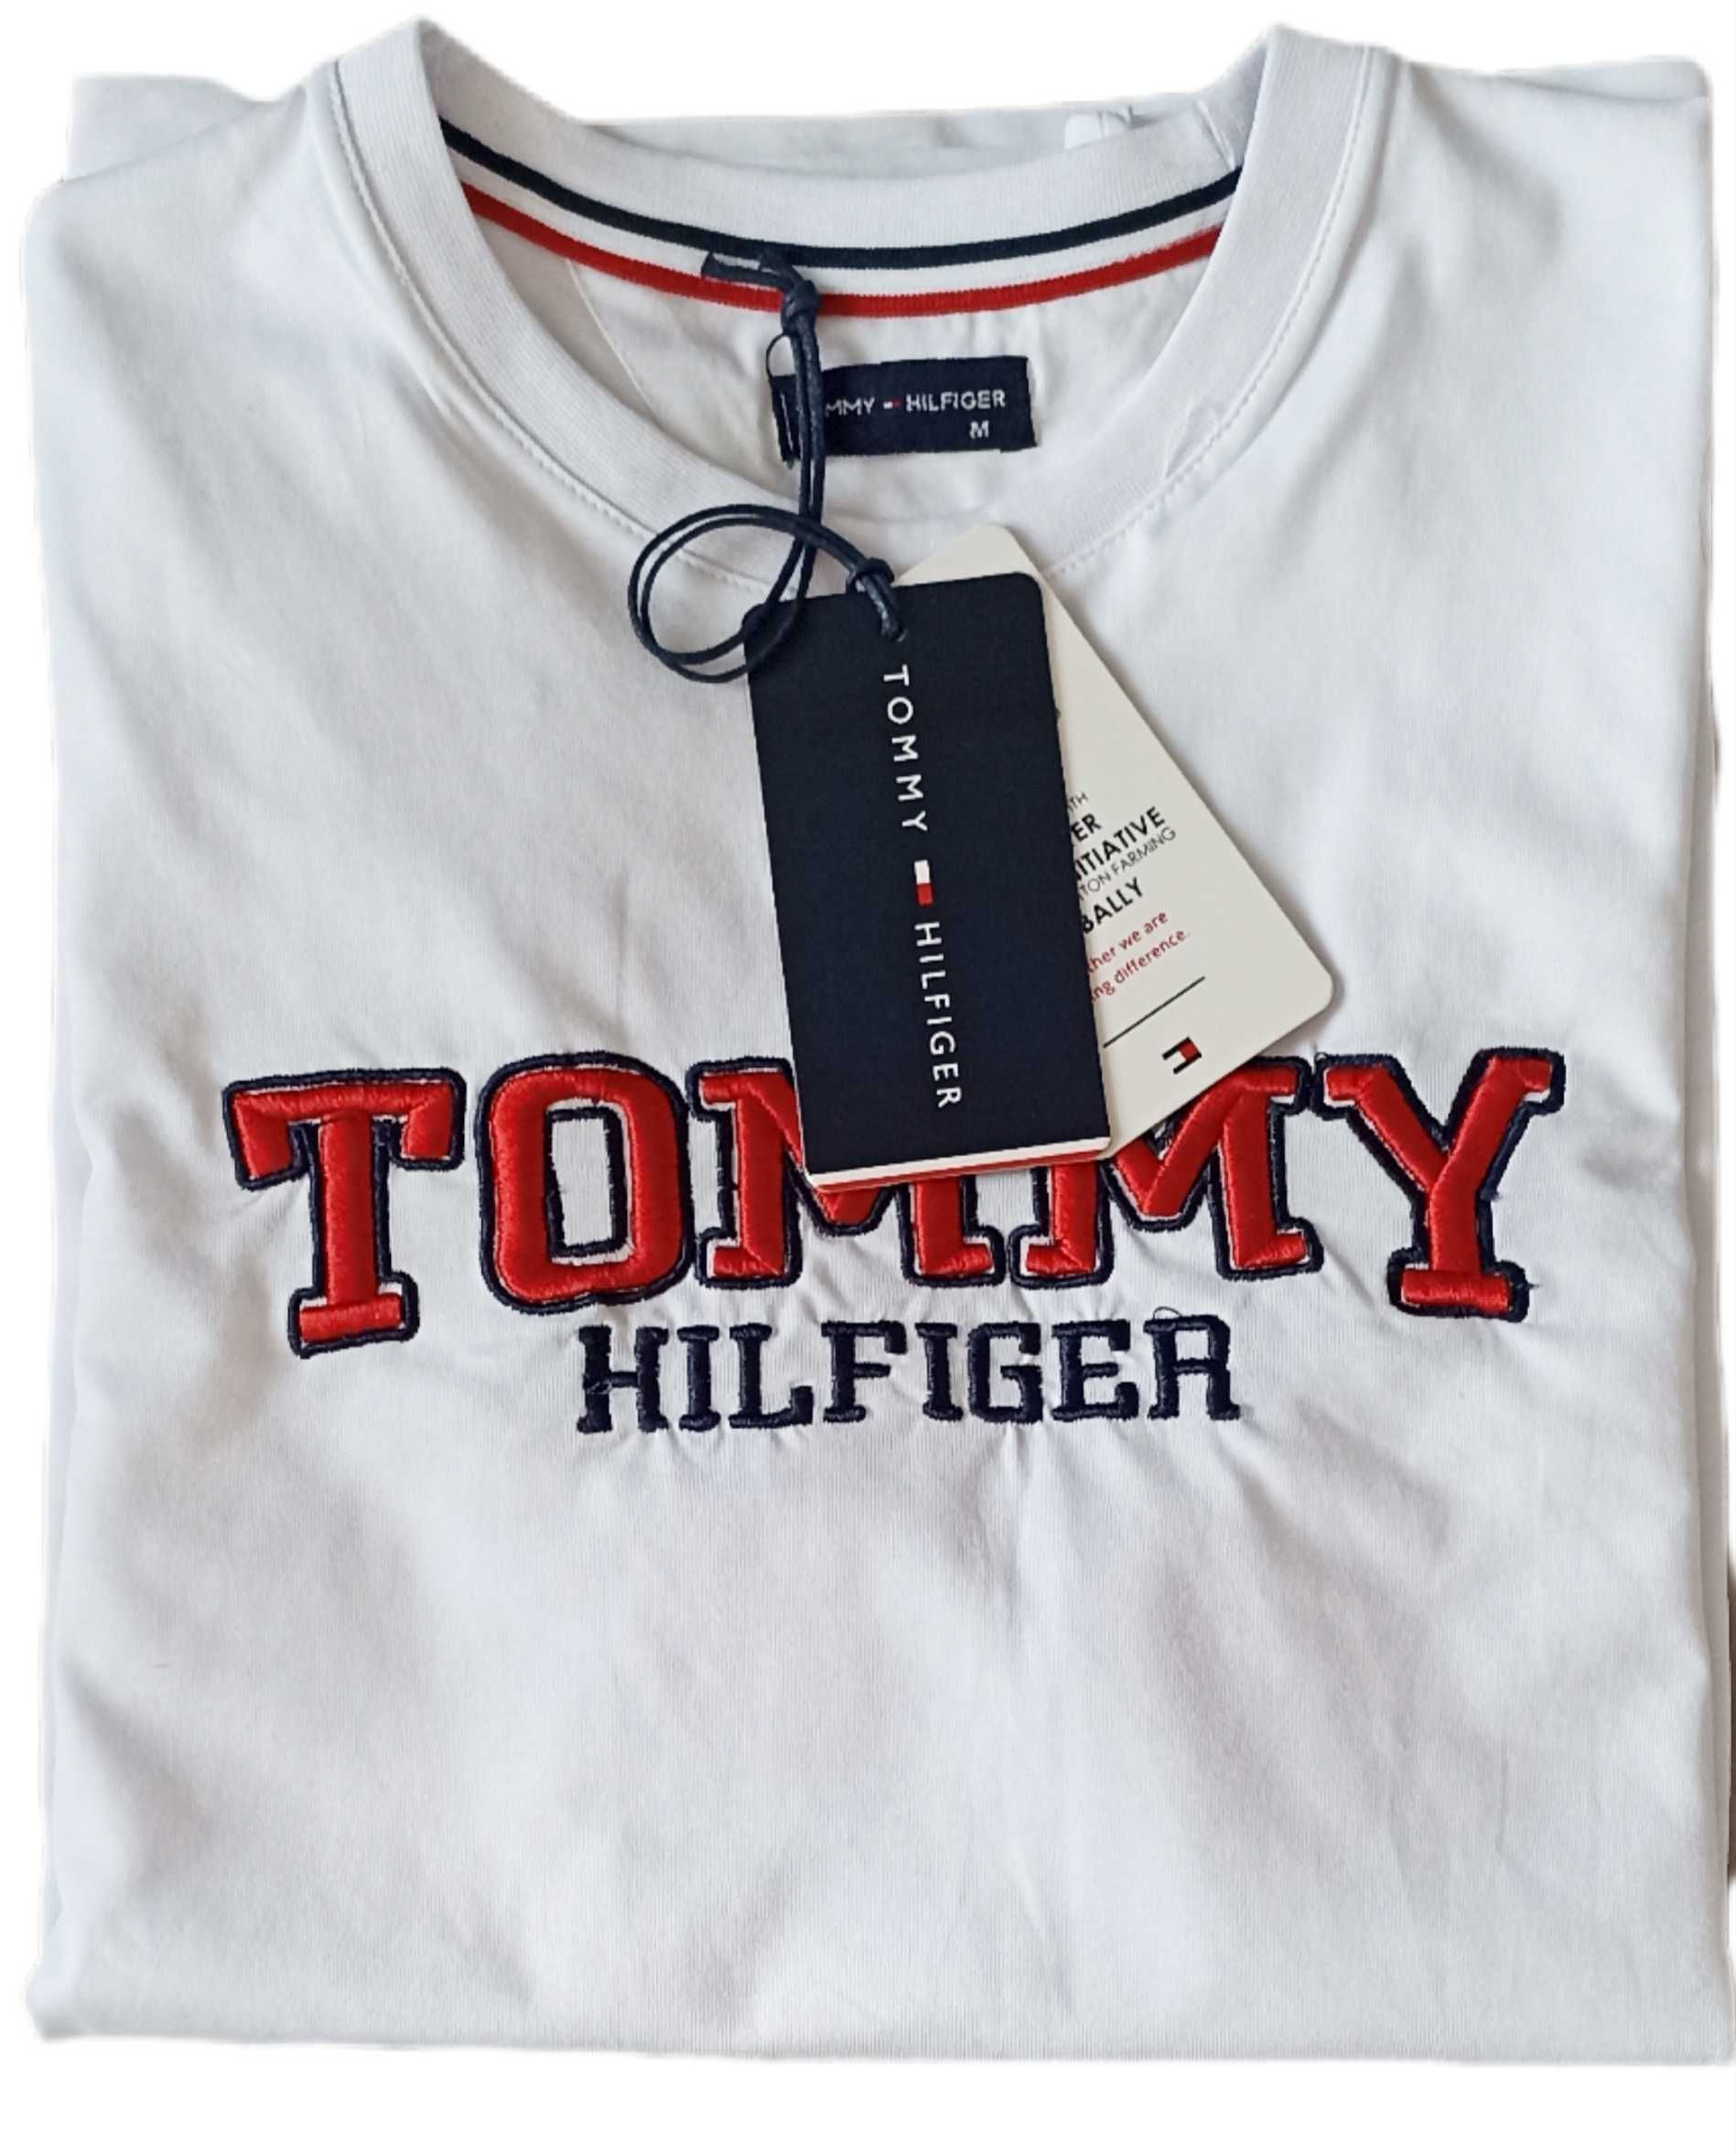 TOMMY HILFIGER T-shirt Koszulka Biała ROZ.M,L,XL,XXL,3XL